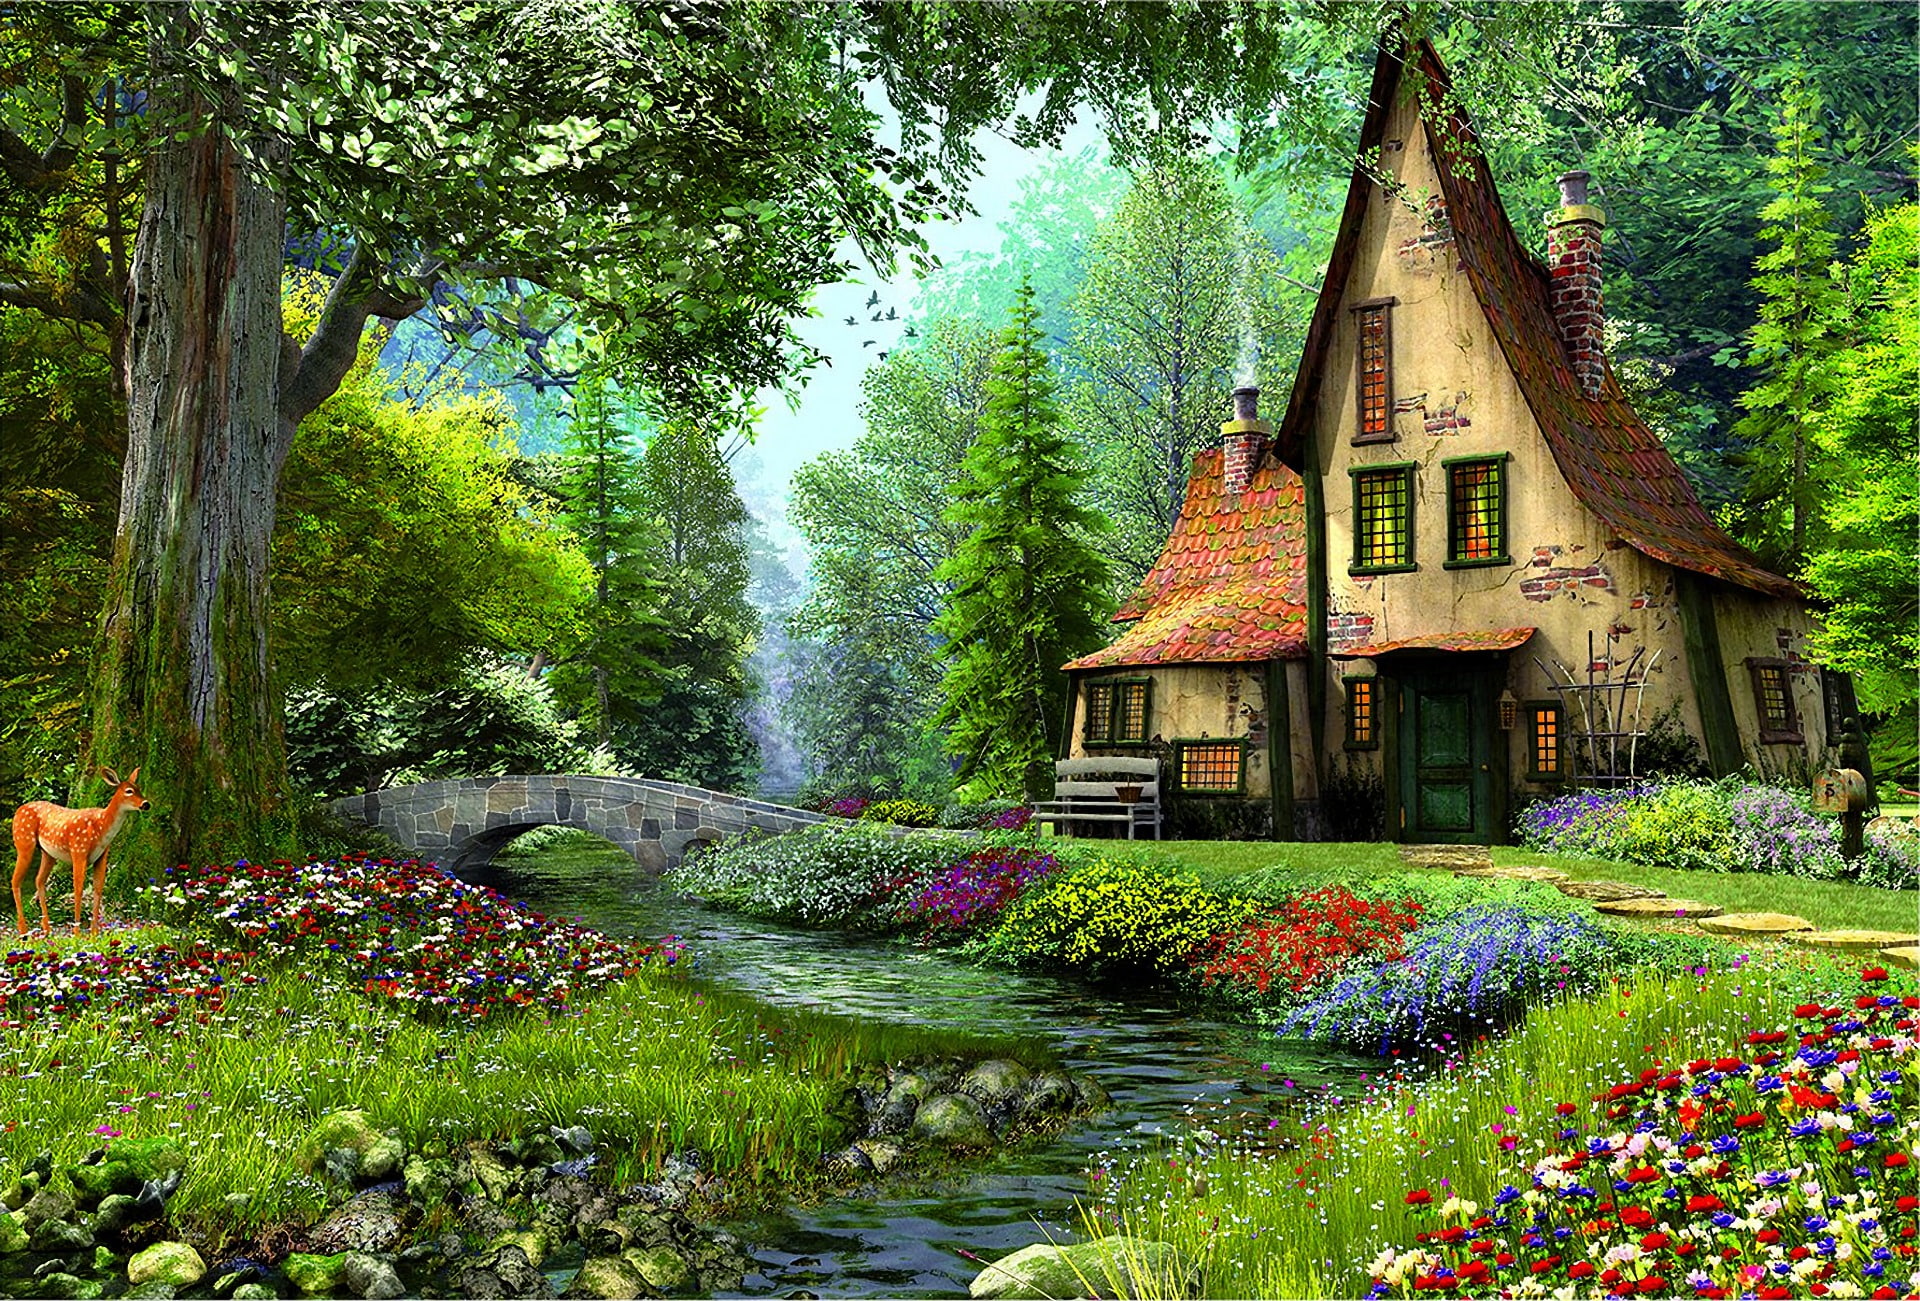 Artistic, Painting, Bridge, Deer, Fairy Tale, Flower, House